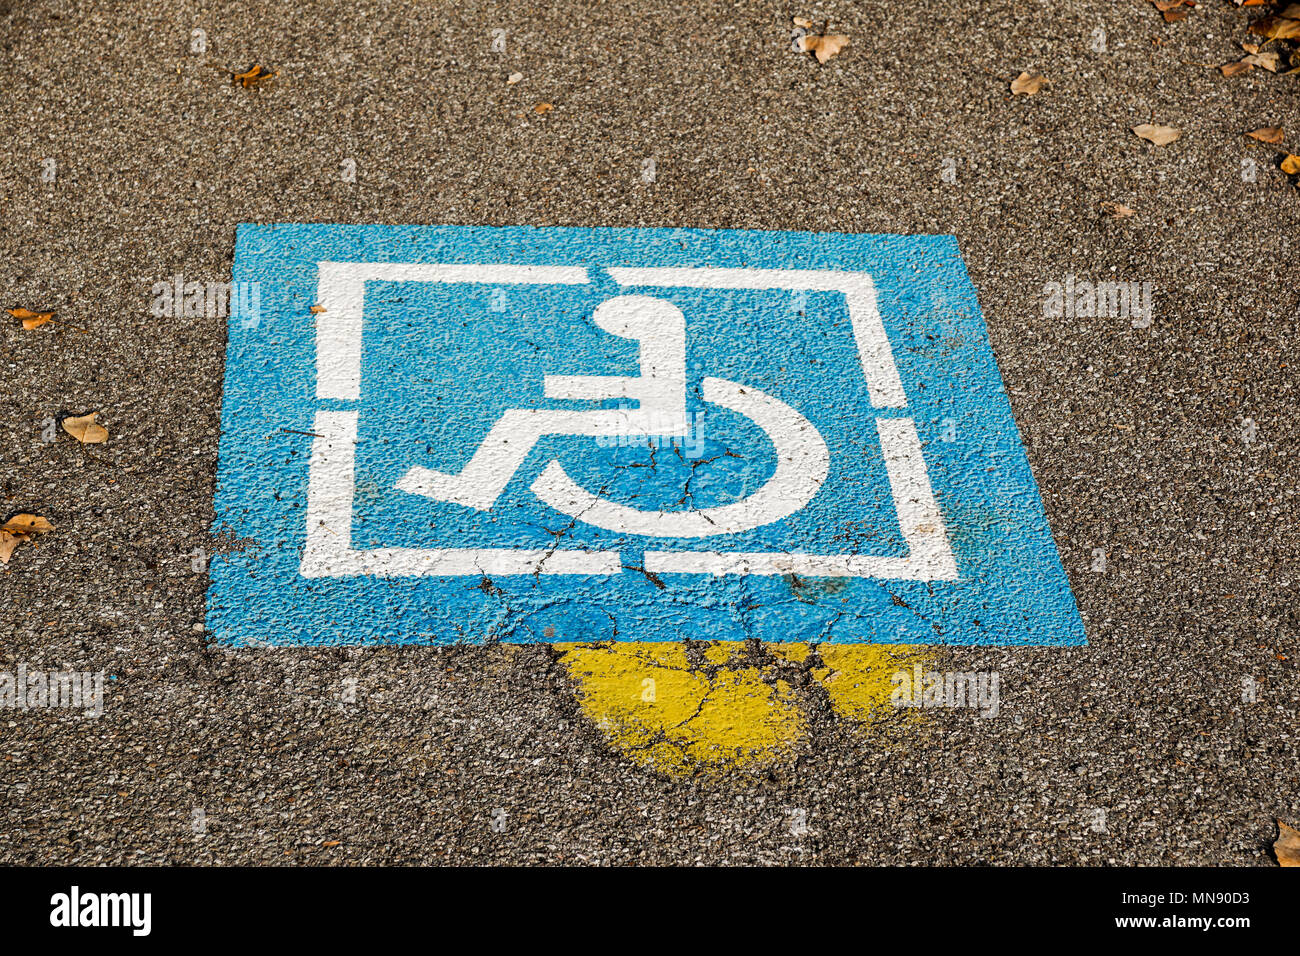 Portatori di handicap blu segno marchio posto parcheggio, parcheggio disabili permettere sign in pole con negozio di gas area stazione di sfondo, spazio di copia Foto Stock